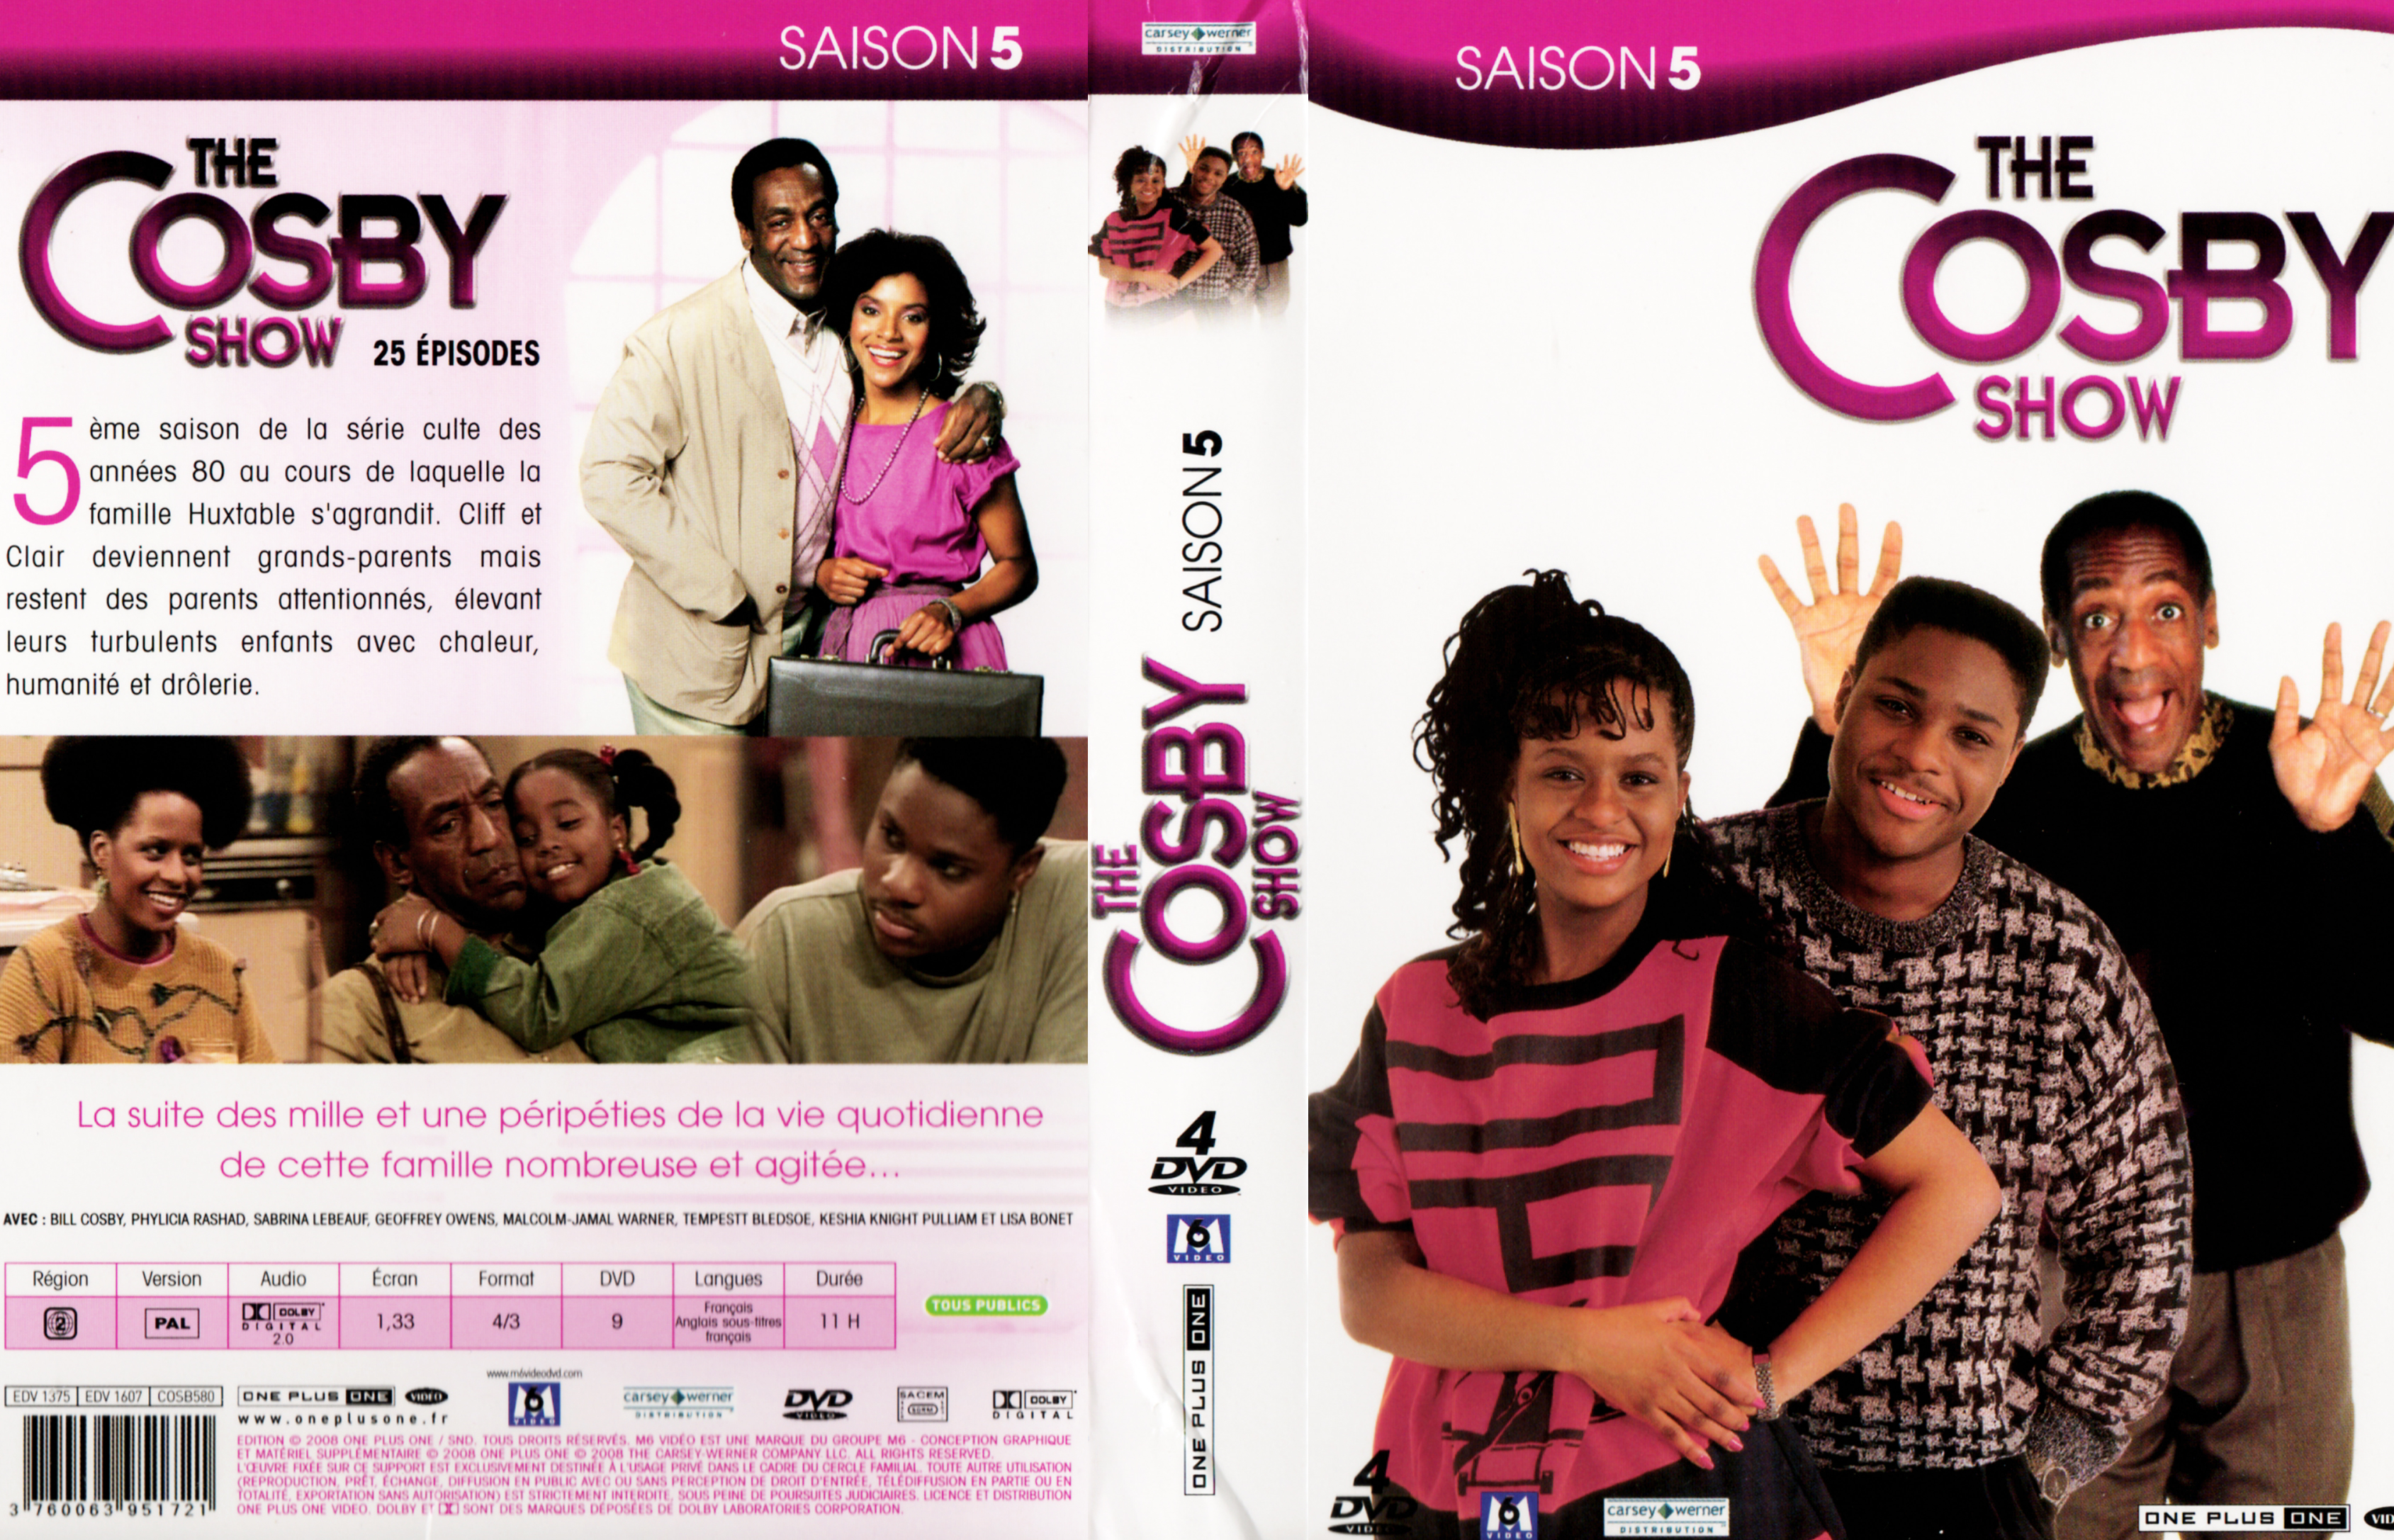 Jaquette DVD The Cosby show Saison 5 COFFRET